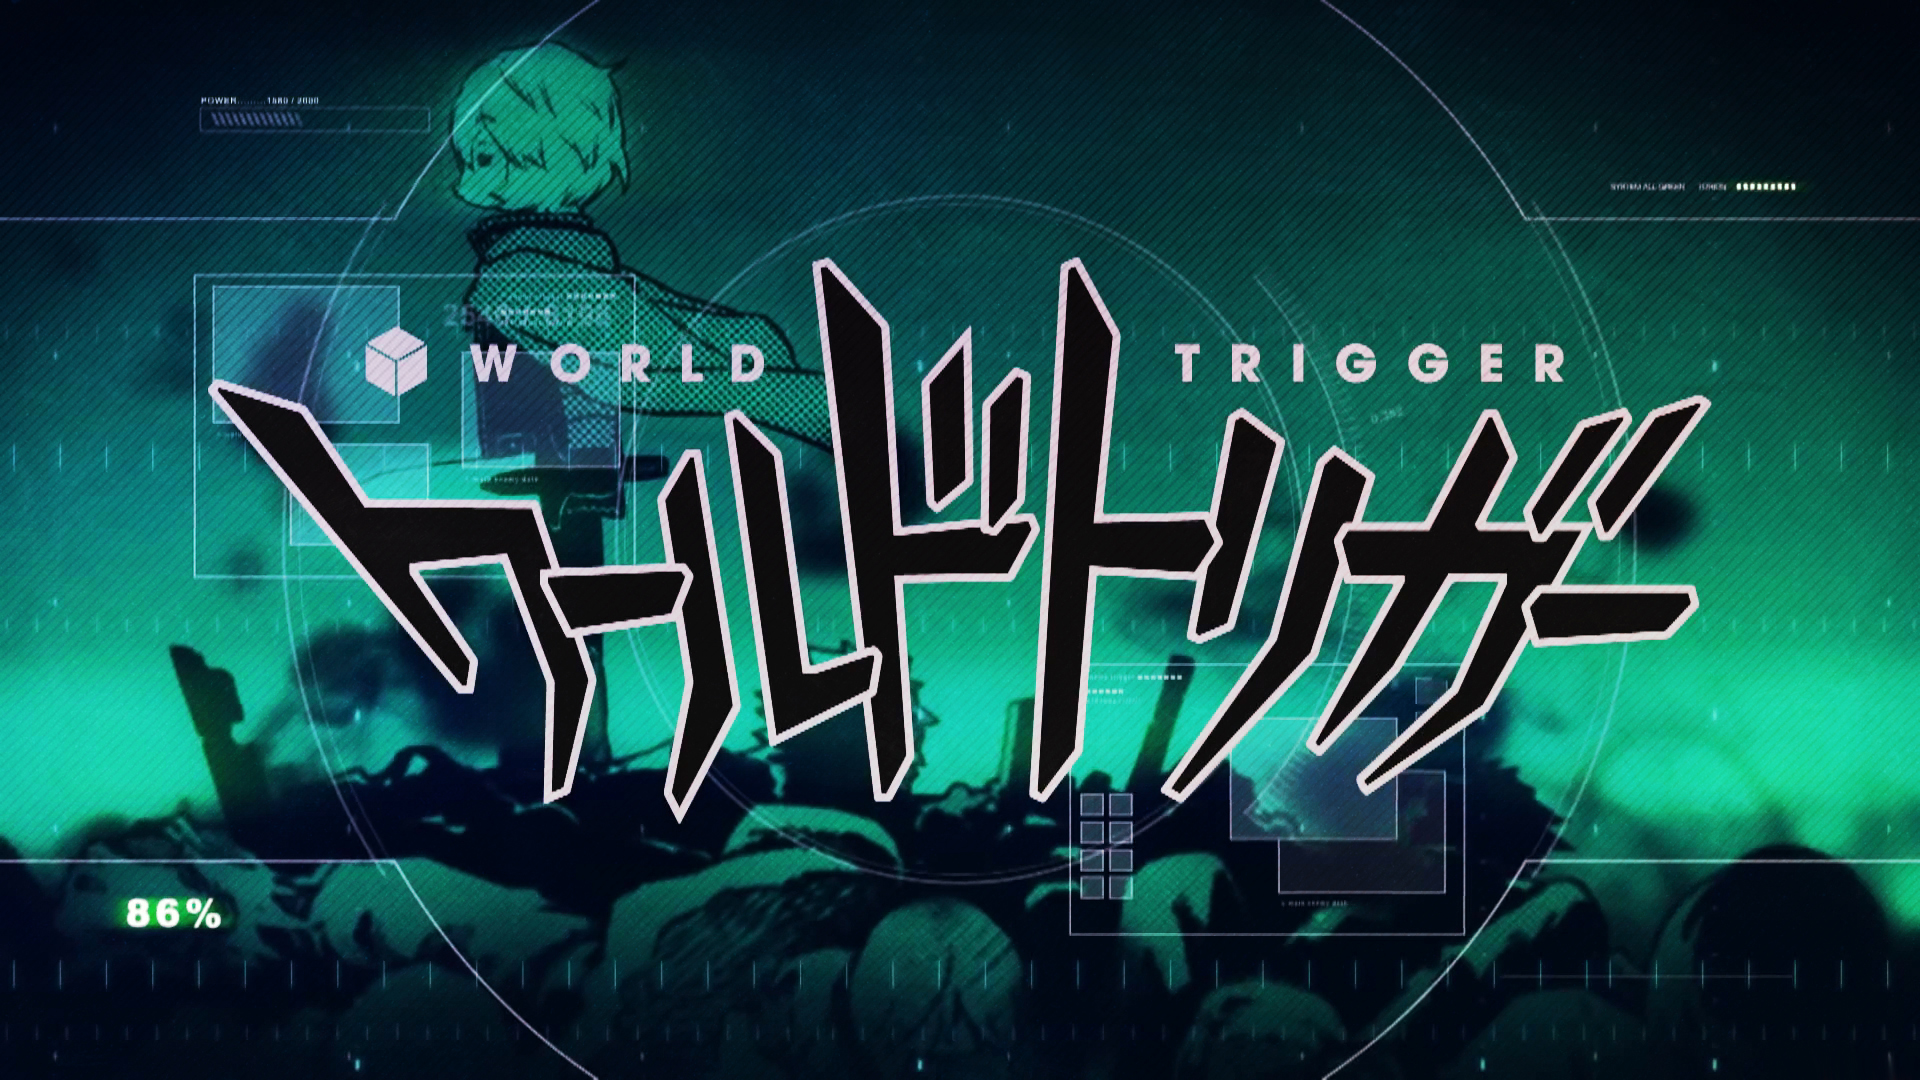 World Trigger wallpaper 5